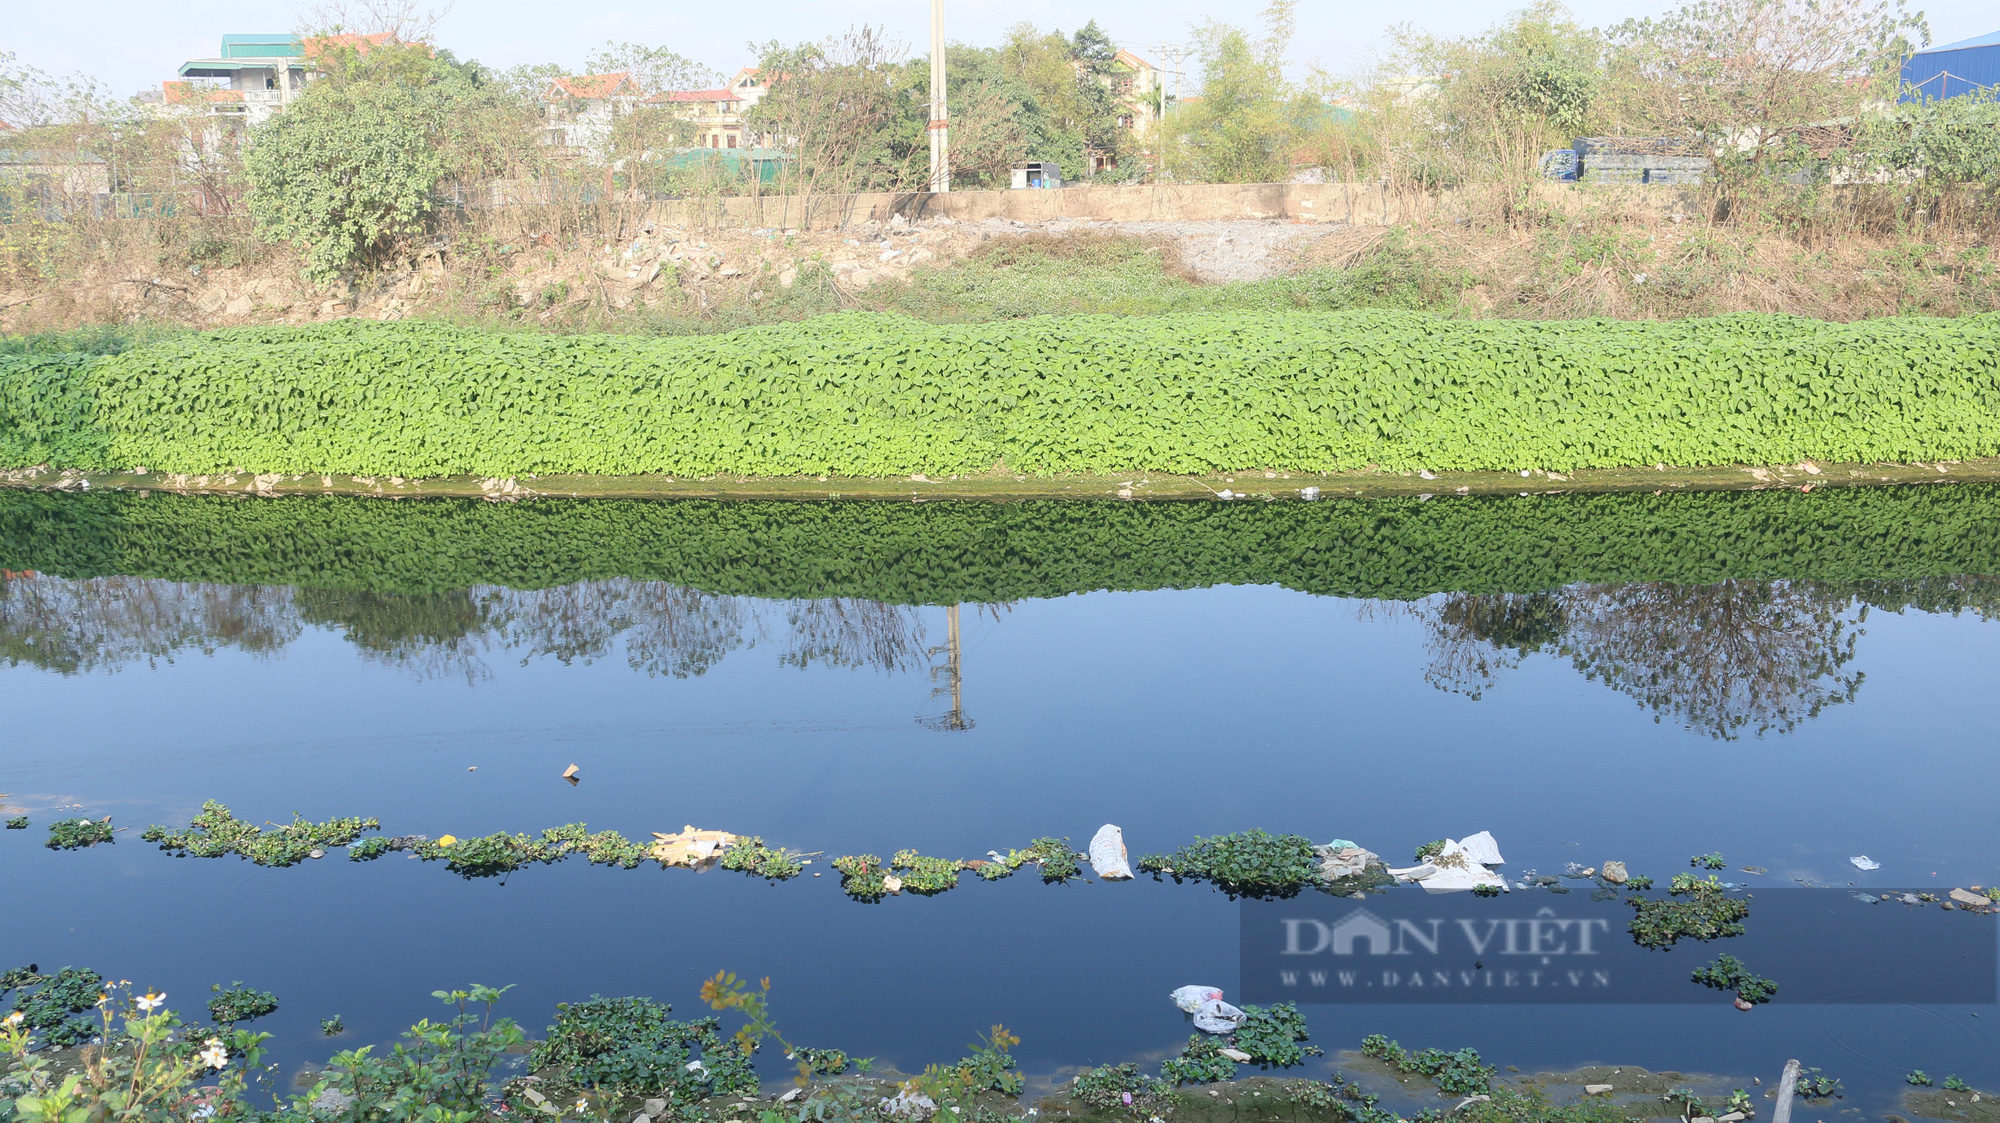 Dòng sông Nhuệ bị ô nhiễm gây nhiều hệ lụy đối với người dân Siêu Quần